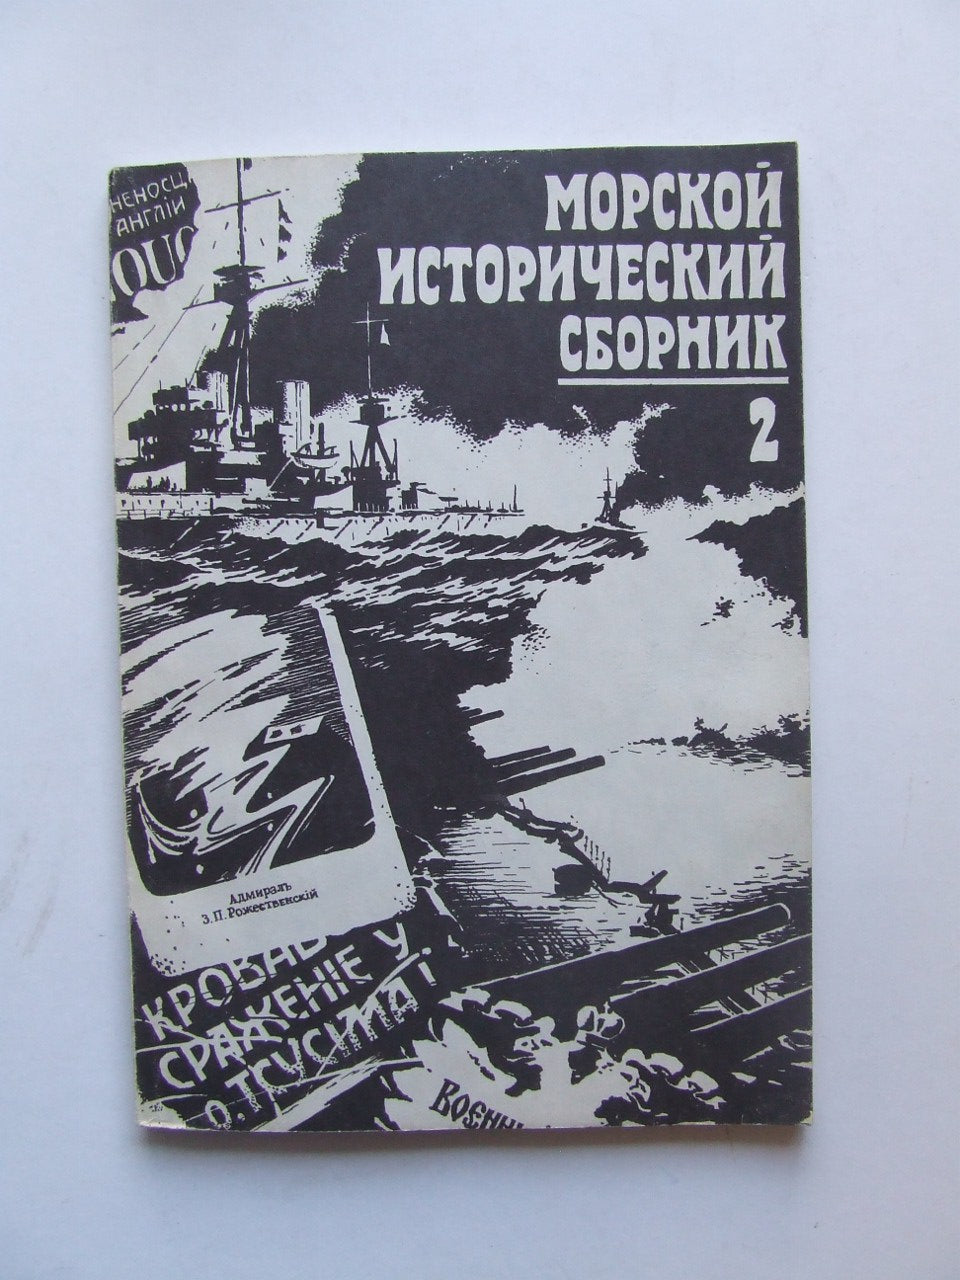 Morskoy Istoricheskiy Sbornik  -  Naval History Digest. second issue